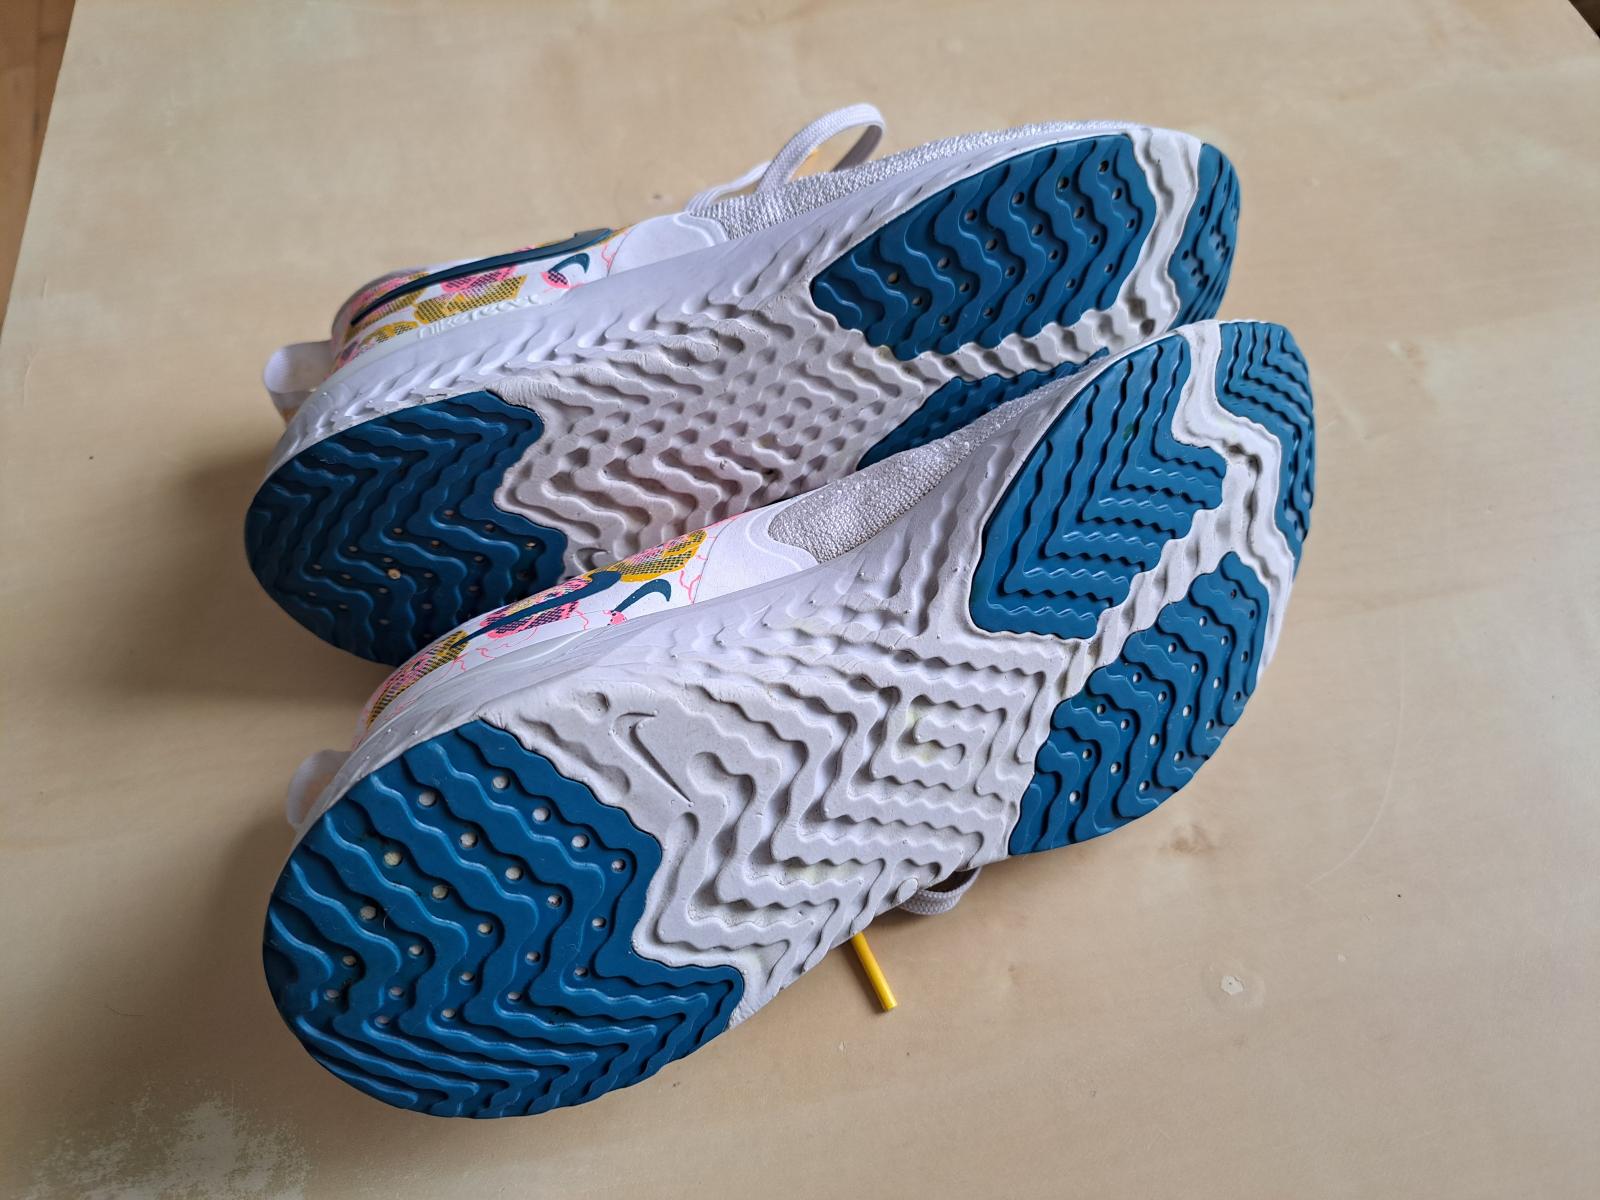 Dámské běžecké boty Nike – Odyssey React 2 / dobrý stav / Vel. 40 - Vybavení na ostatní sporty